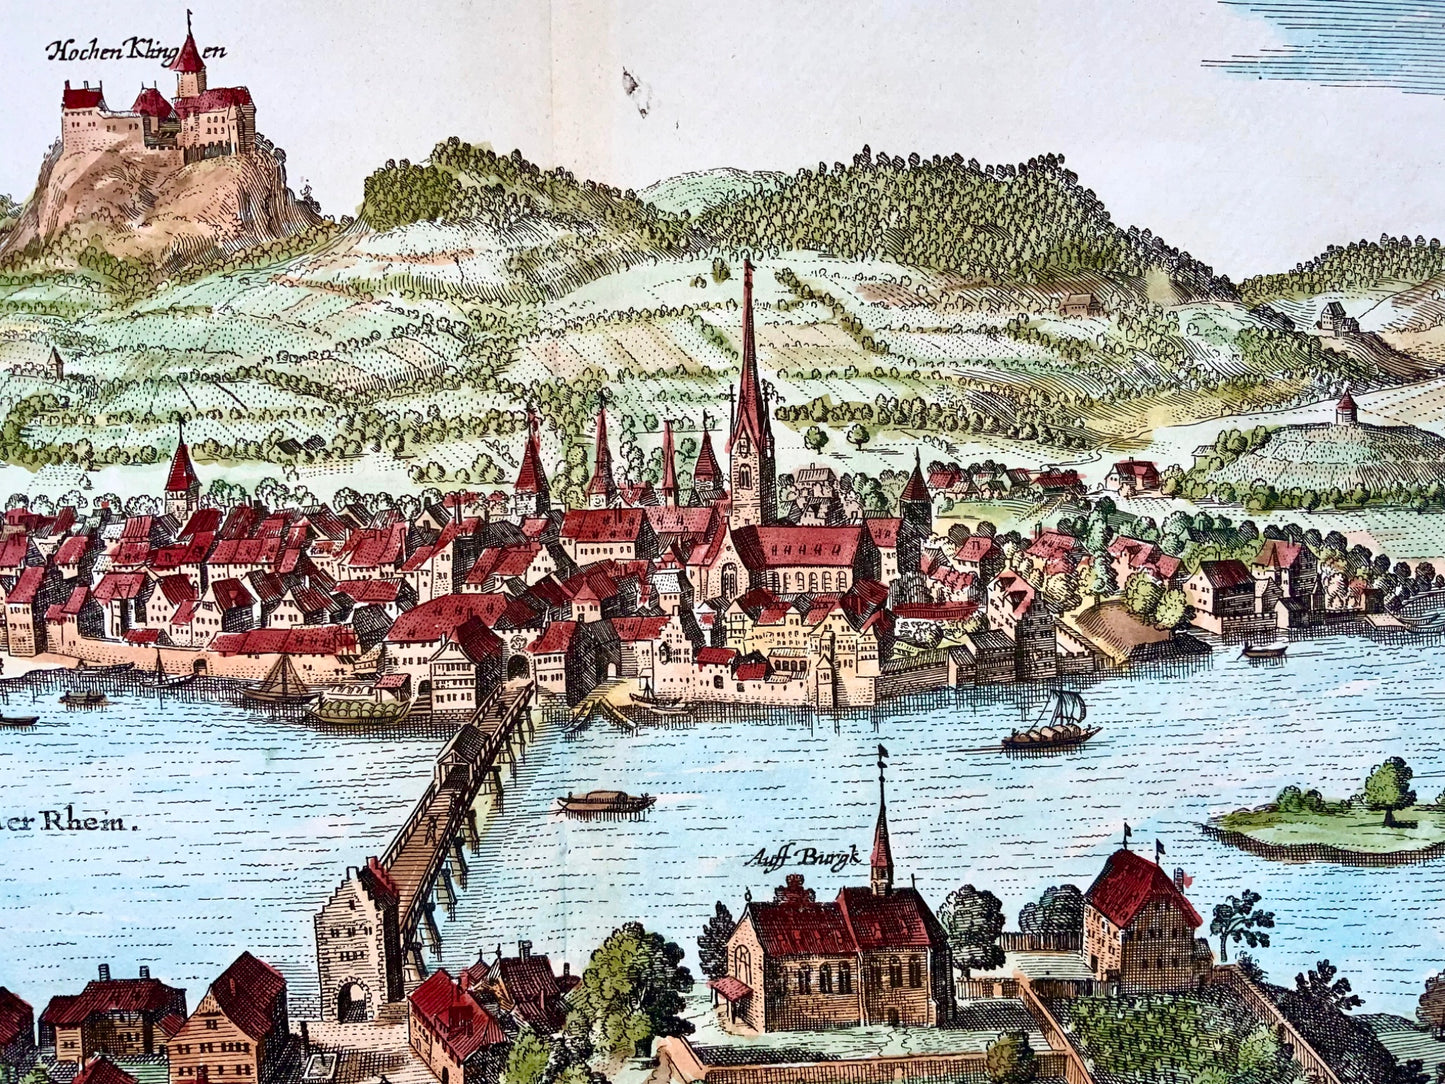 1654 Merian, Stein am Rhein, large double folio, Switzerland